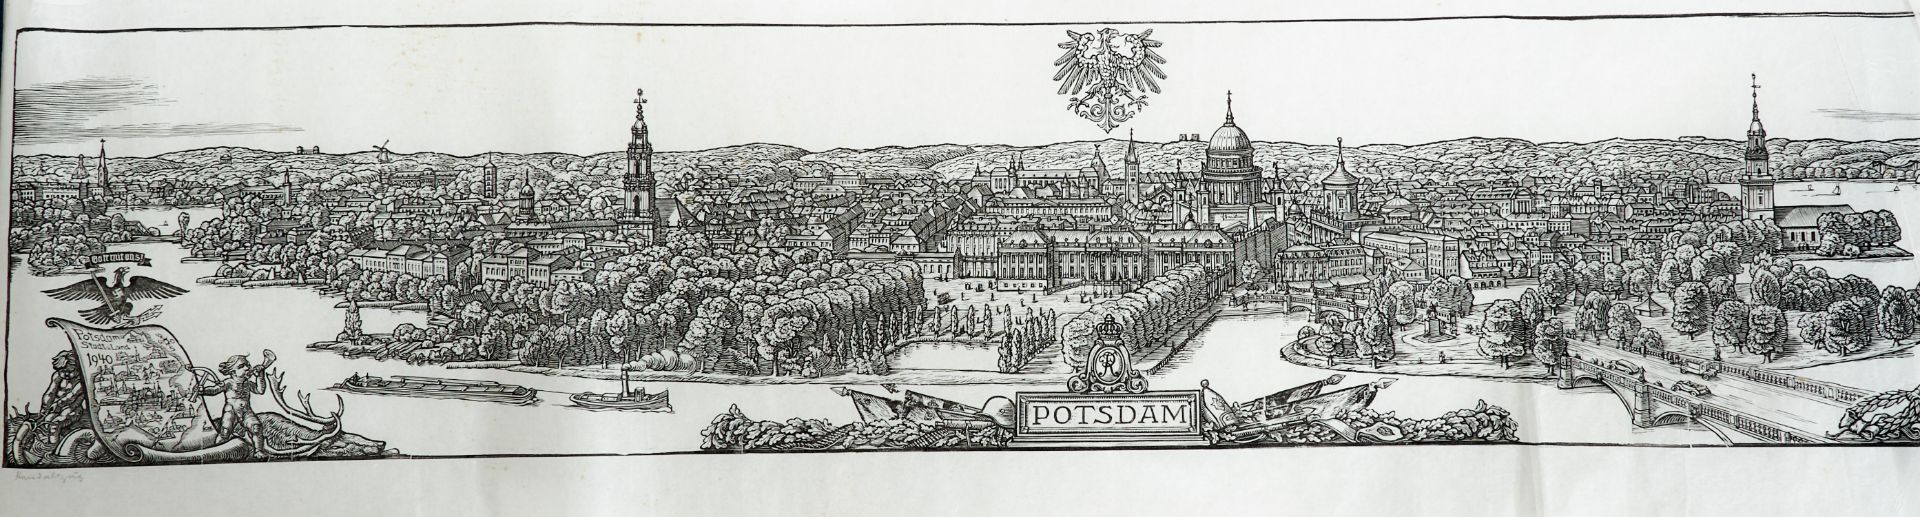 Stuttgart - "Stuttgart". Holzschnitt auf Pergaminpapier von E. Feyerabend, dat. 1945. 27,5 x 147 cm. - Image 5 of 5